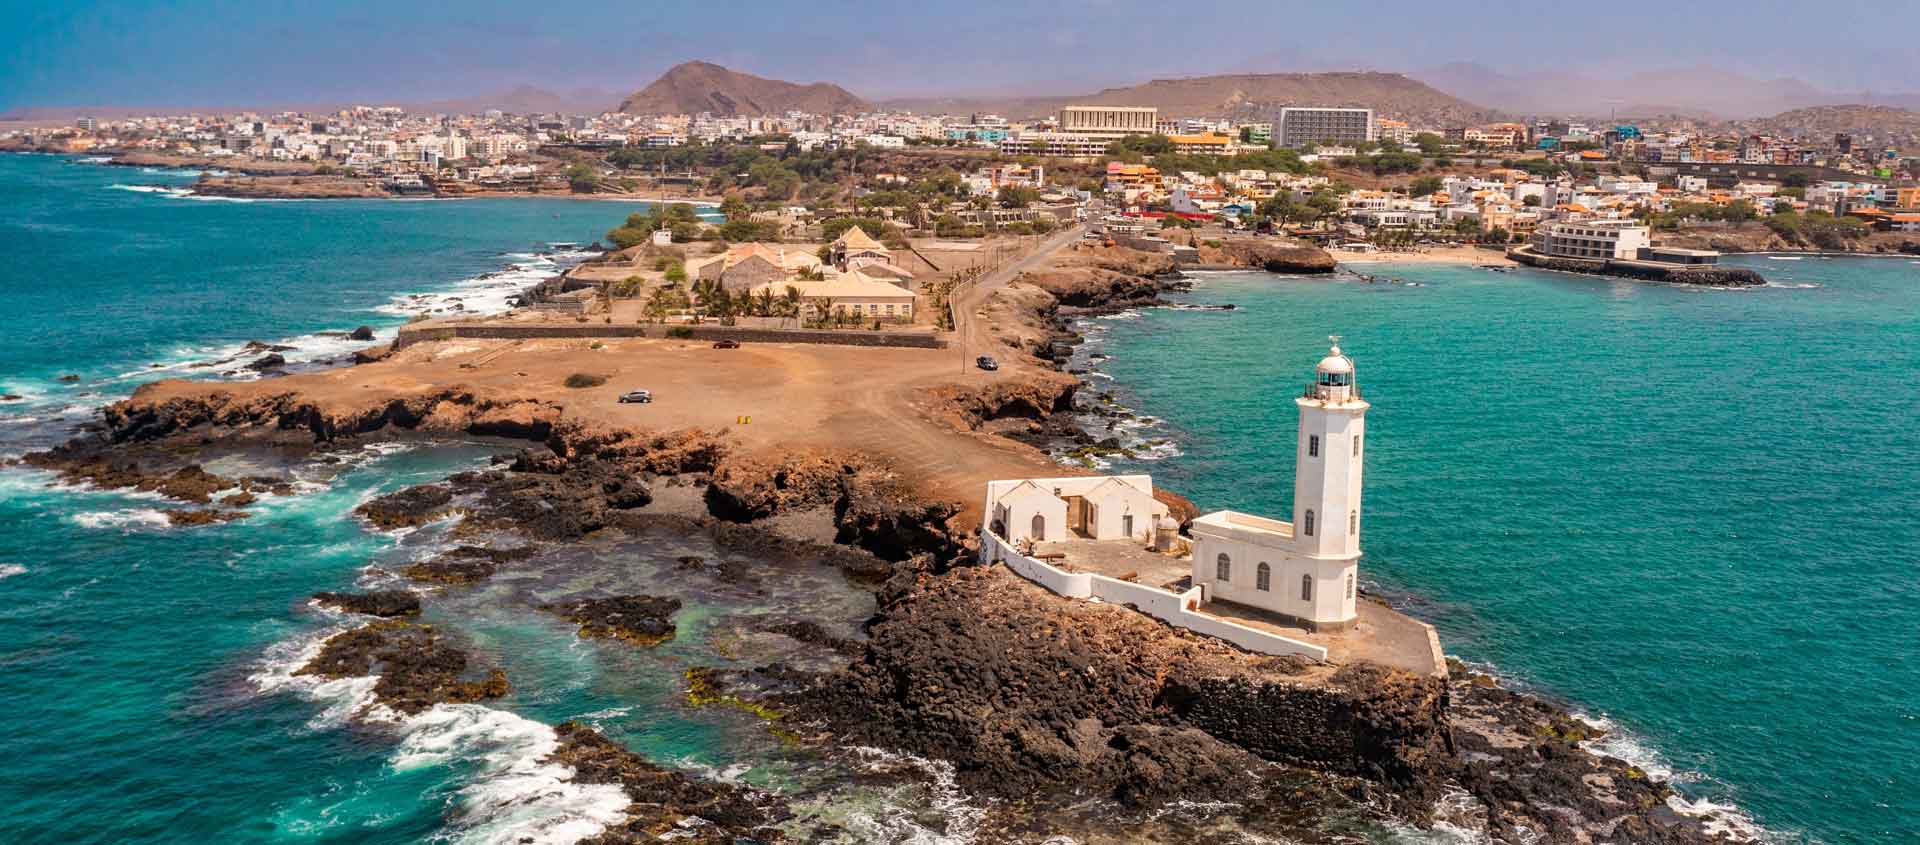 West Africa cruise image of Praia, Santiago Island, Cape Verde.